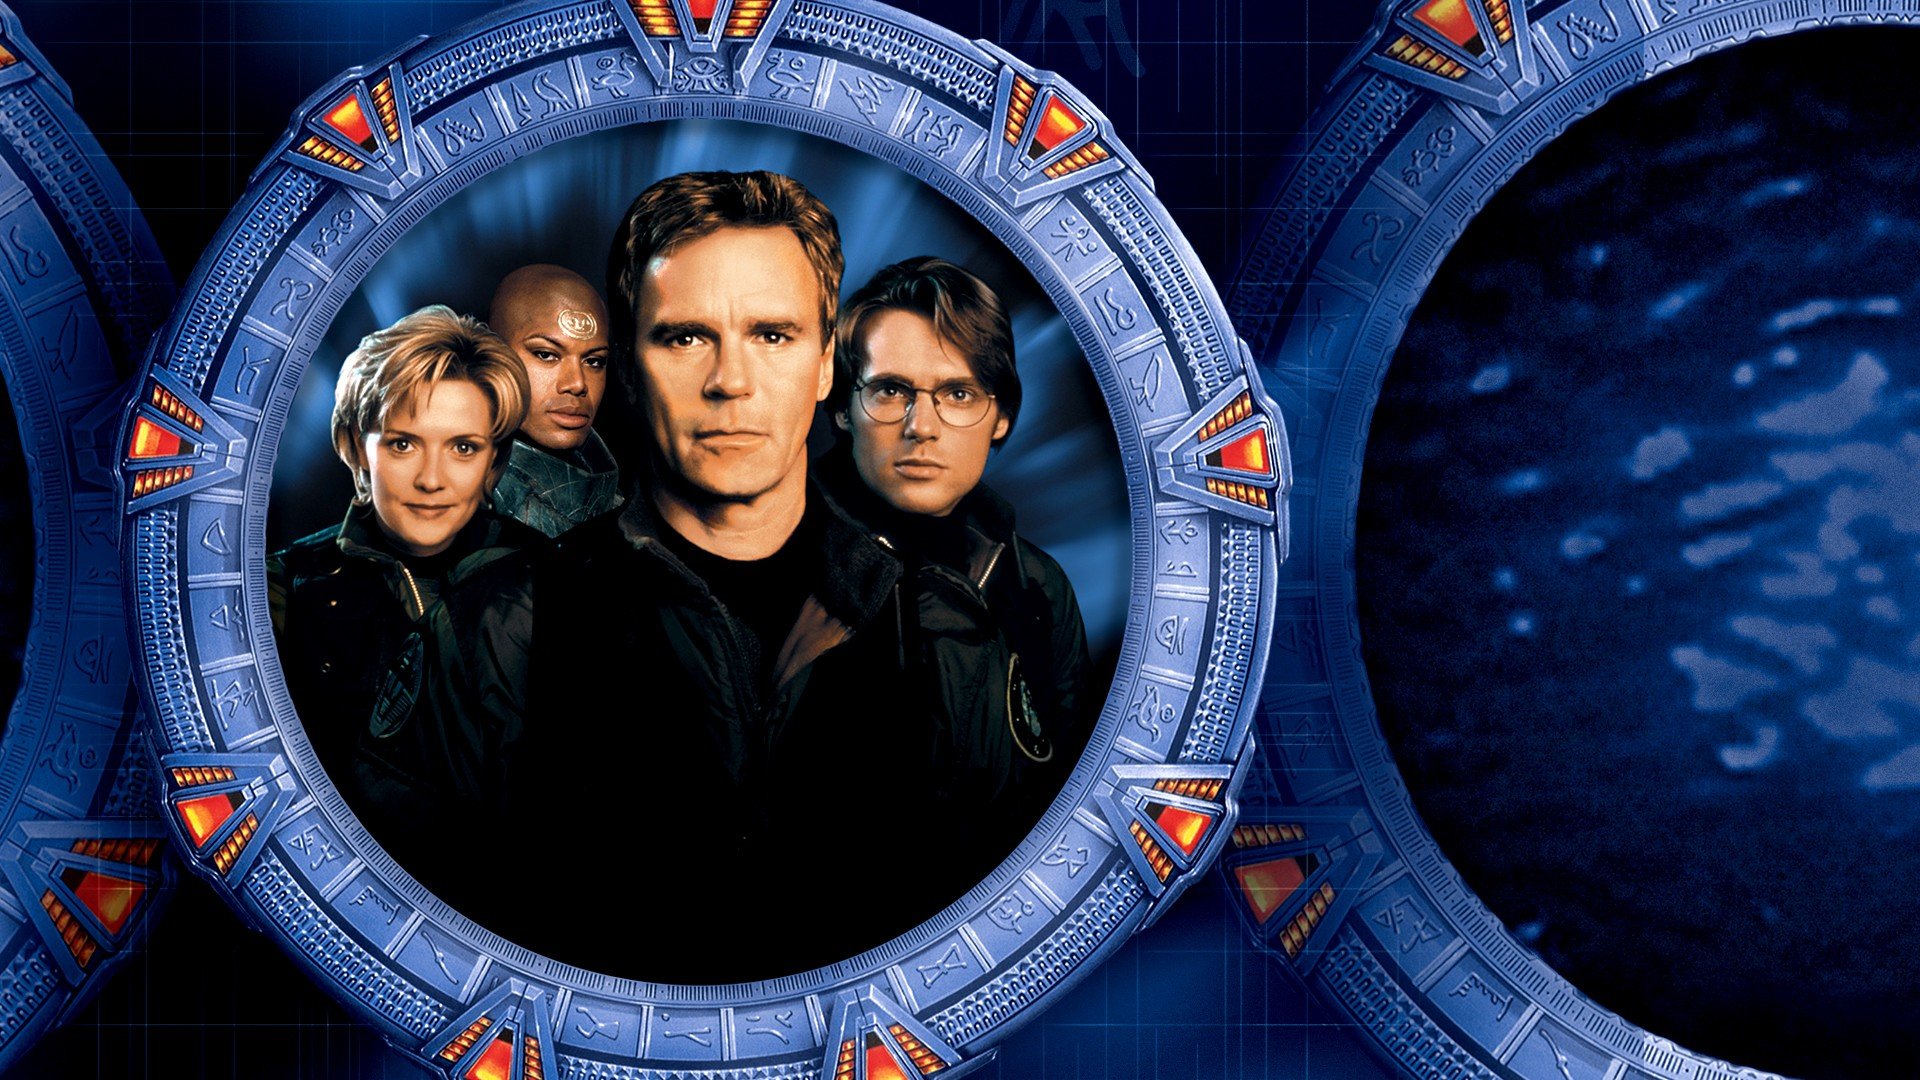 Best Stargate SG-1 wallpaper ID:497016 for High Resolution full hd 1920x1080 desktop